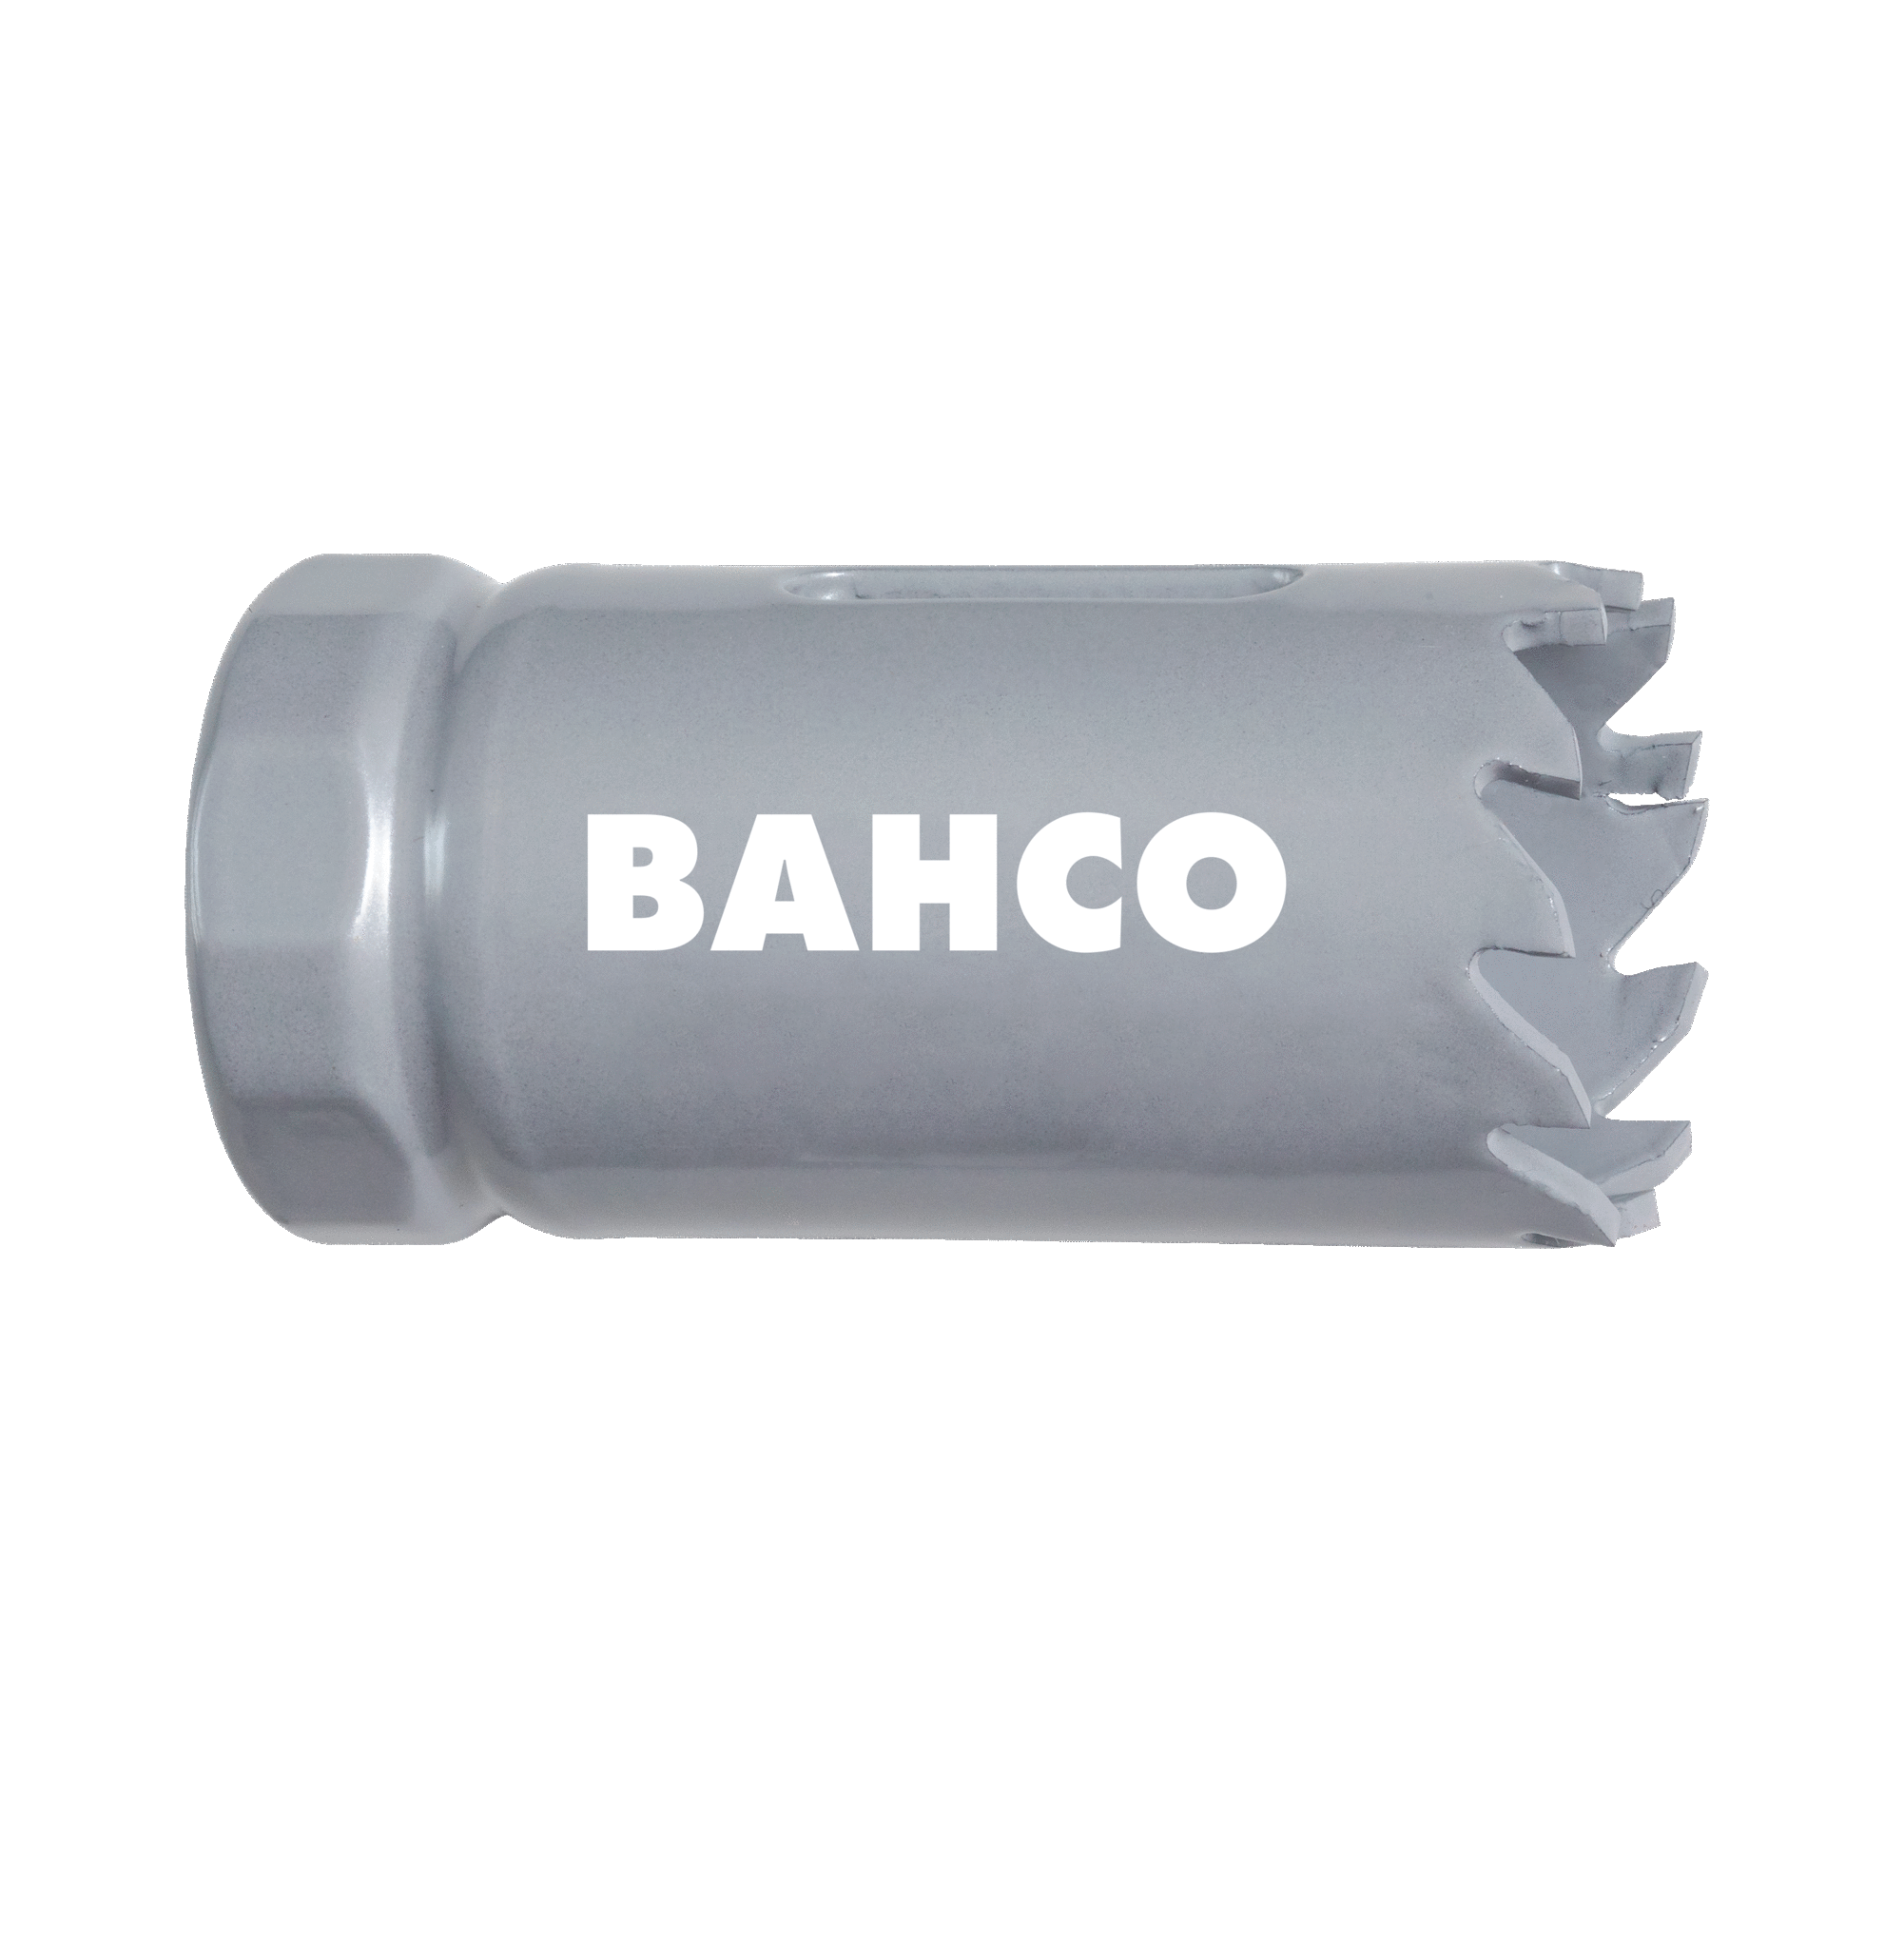 Кольцевые пилы с твердосплавными напайками BAHCO 3832-108